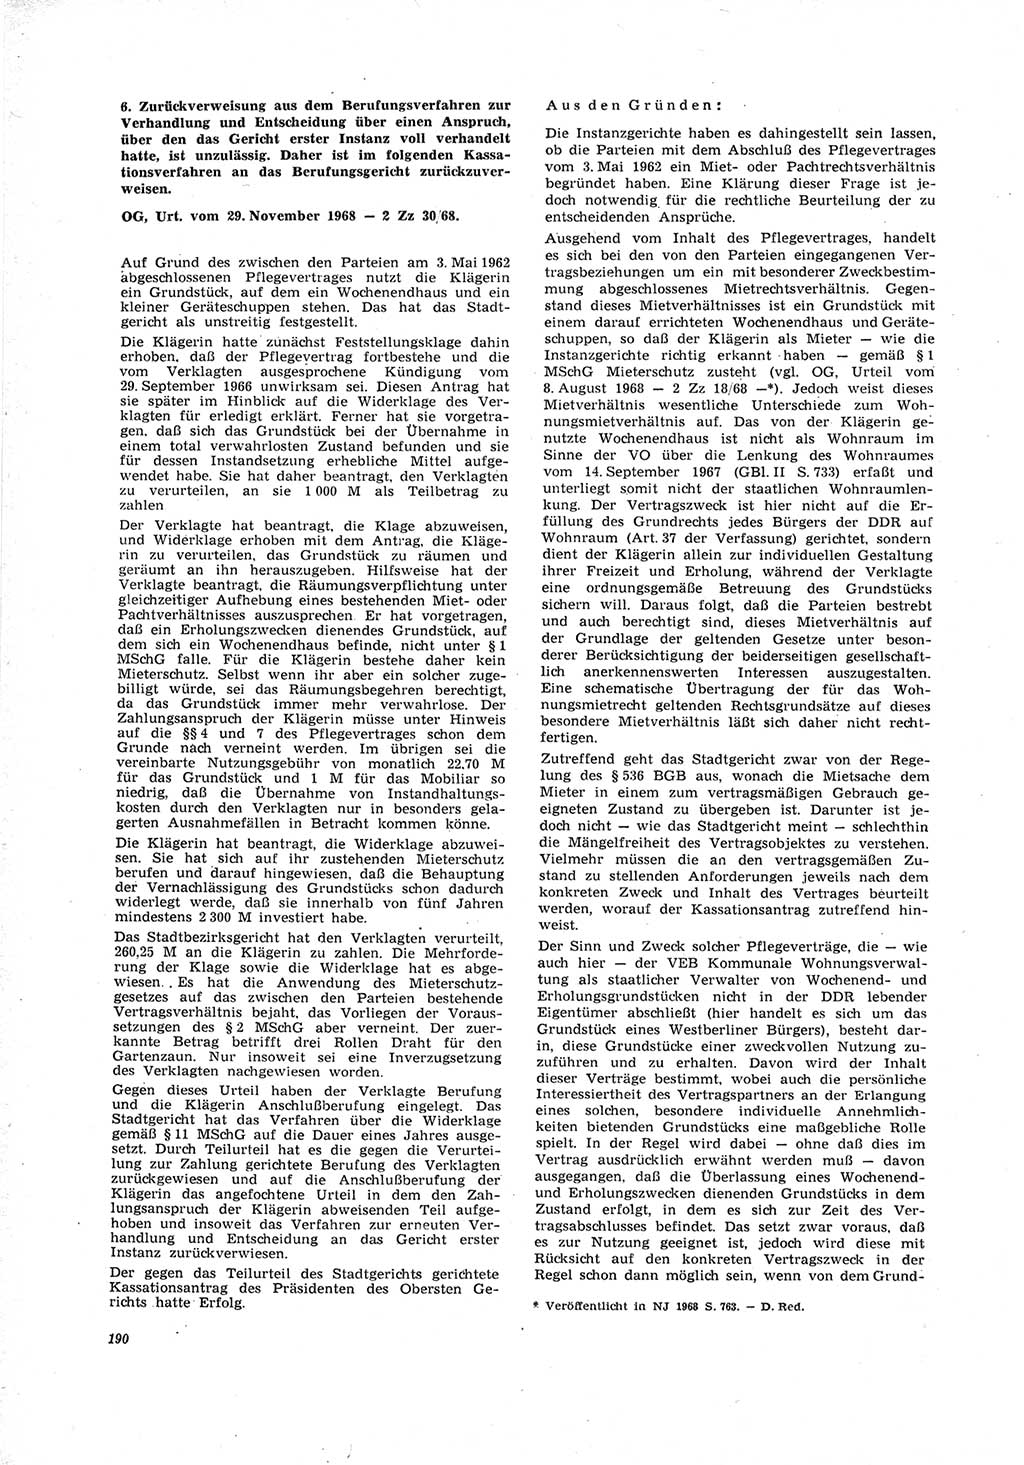 Neue Justiz (NJ), Zeitschrift für Recht und Rechtswissenschaft [Deutsche Demokratische Republik (DDR)], 23. Jahrgang 1969, Seite 190 (NJ DDR 1969, S. 190)